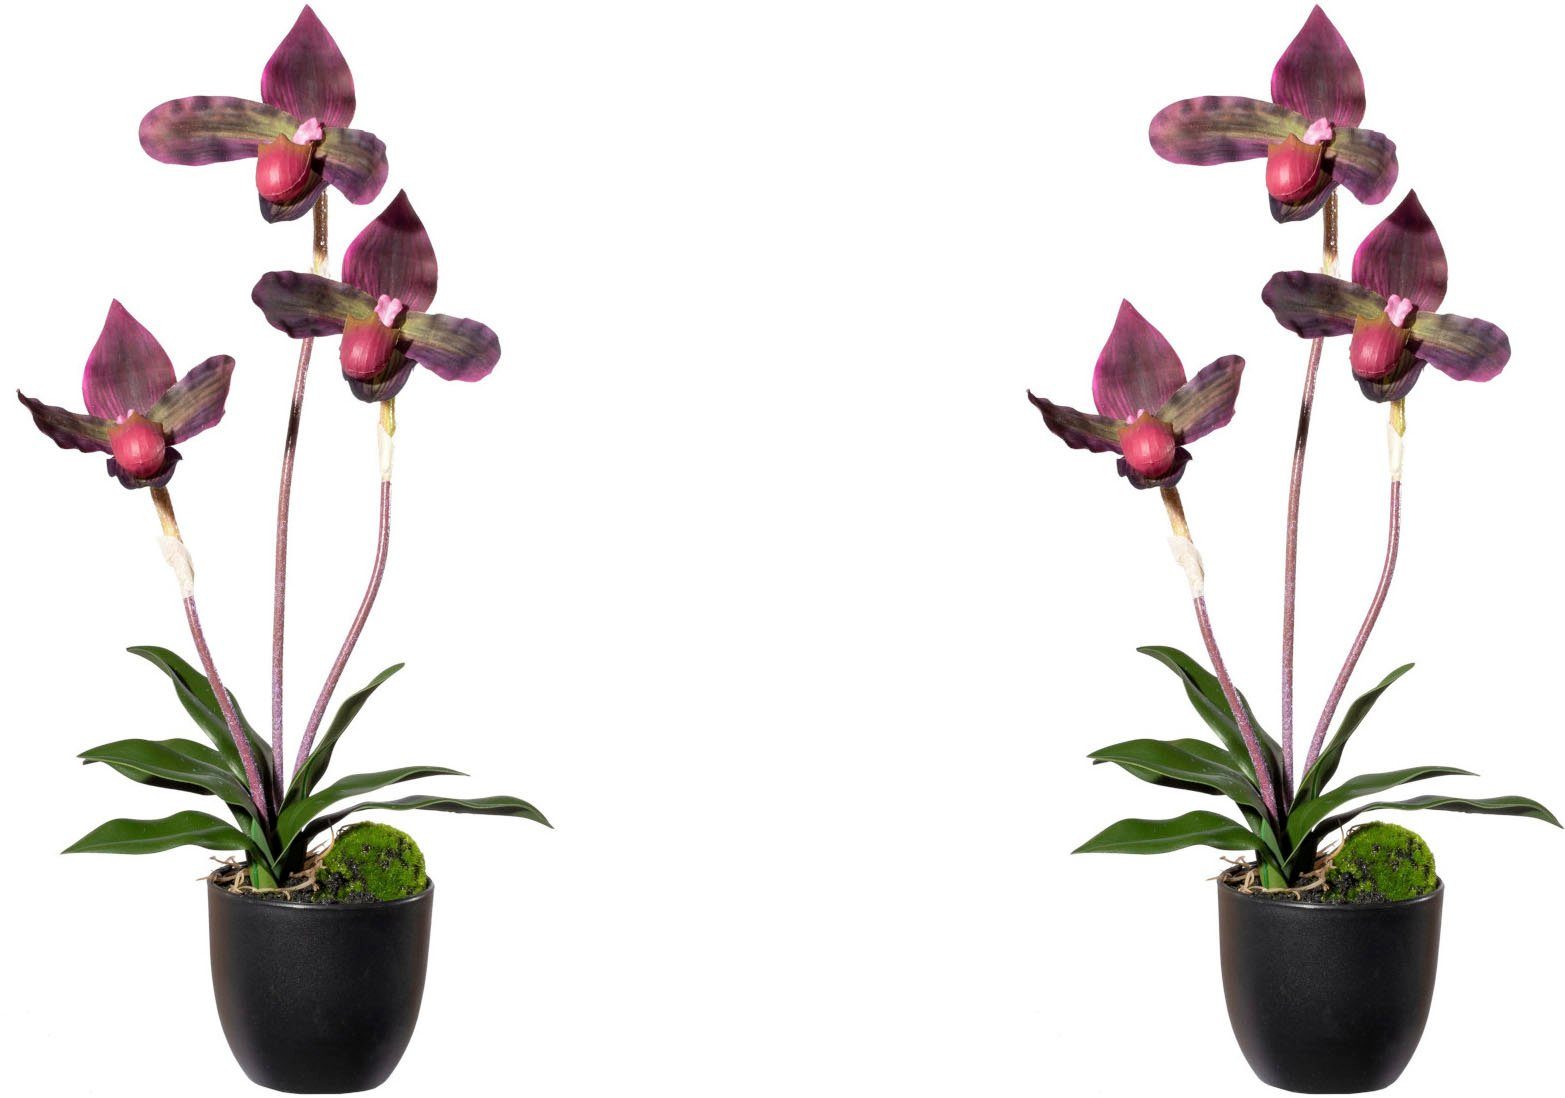 Kunstorchidee Orchidee Frauenschuh Orchidee Frauenschuh, Creativ green, Höhe 45 cm, mit Real-Touch-Blüten bordeaux | Kunstorchideen